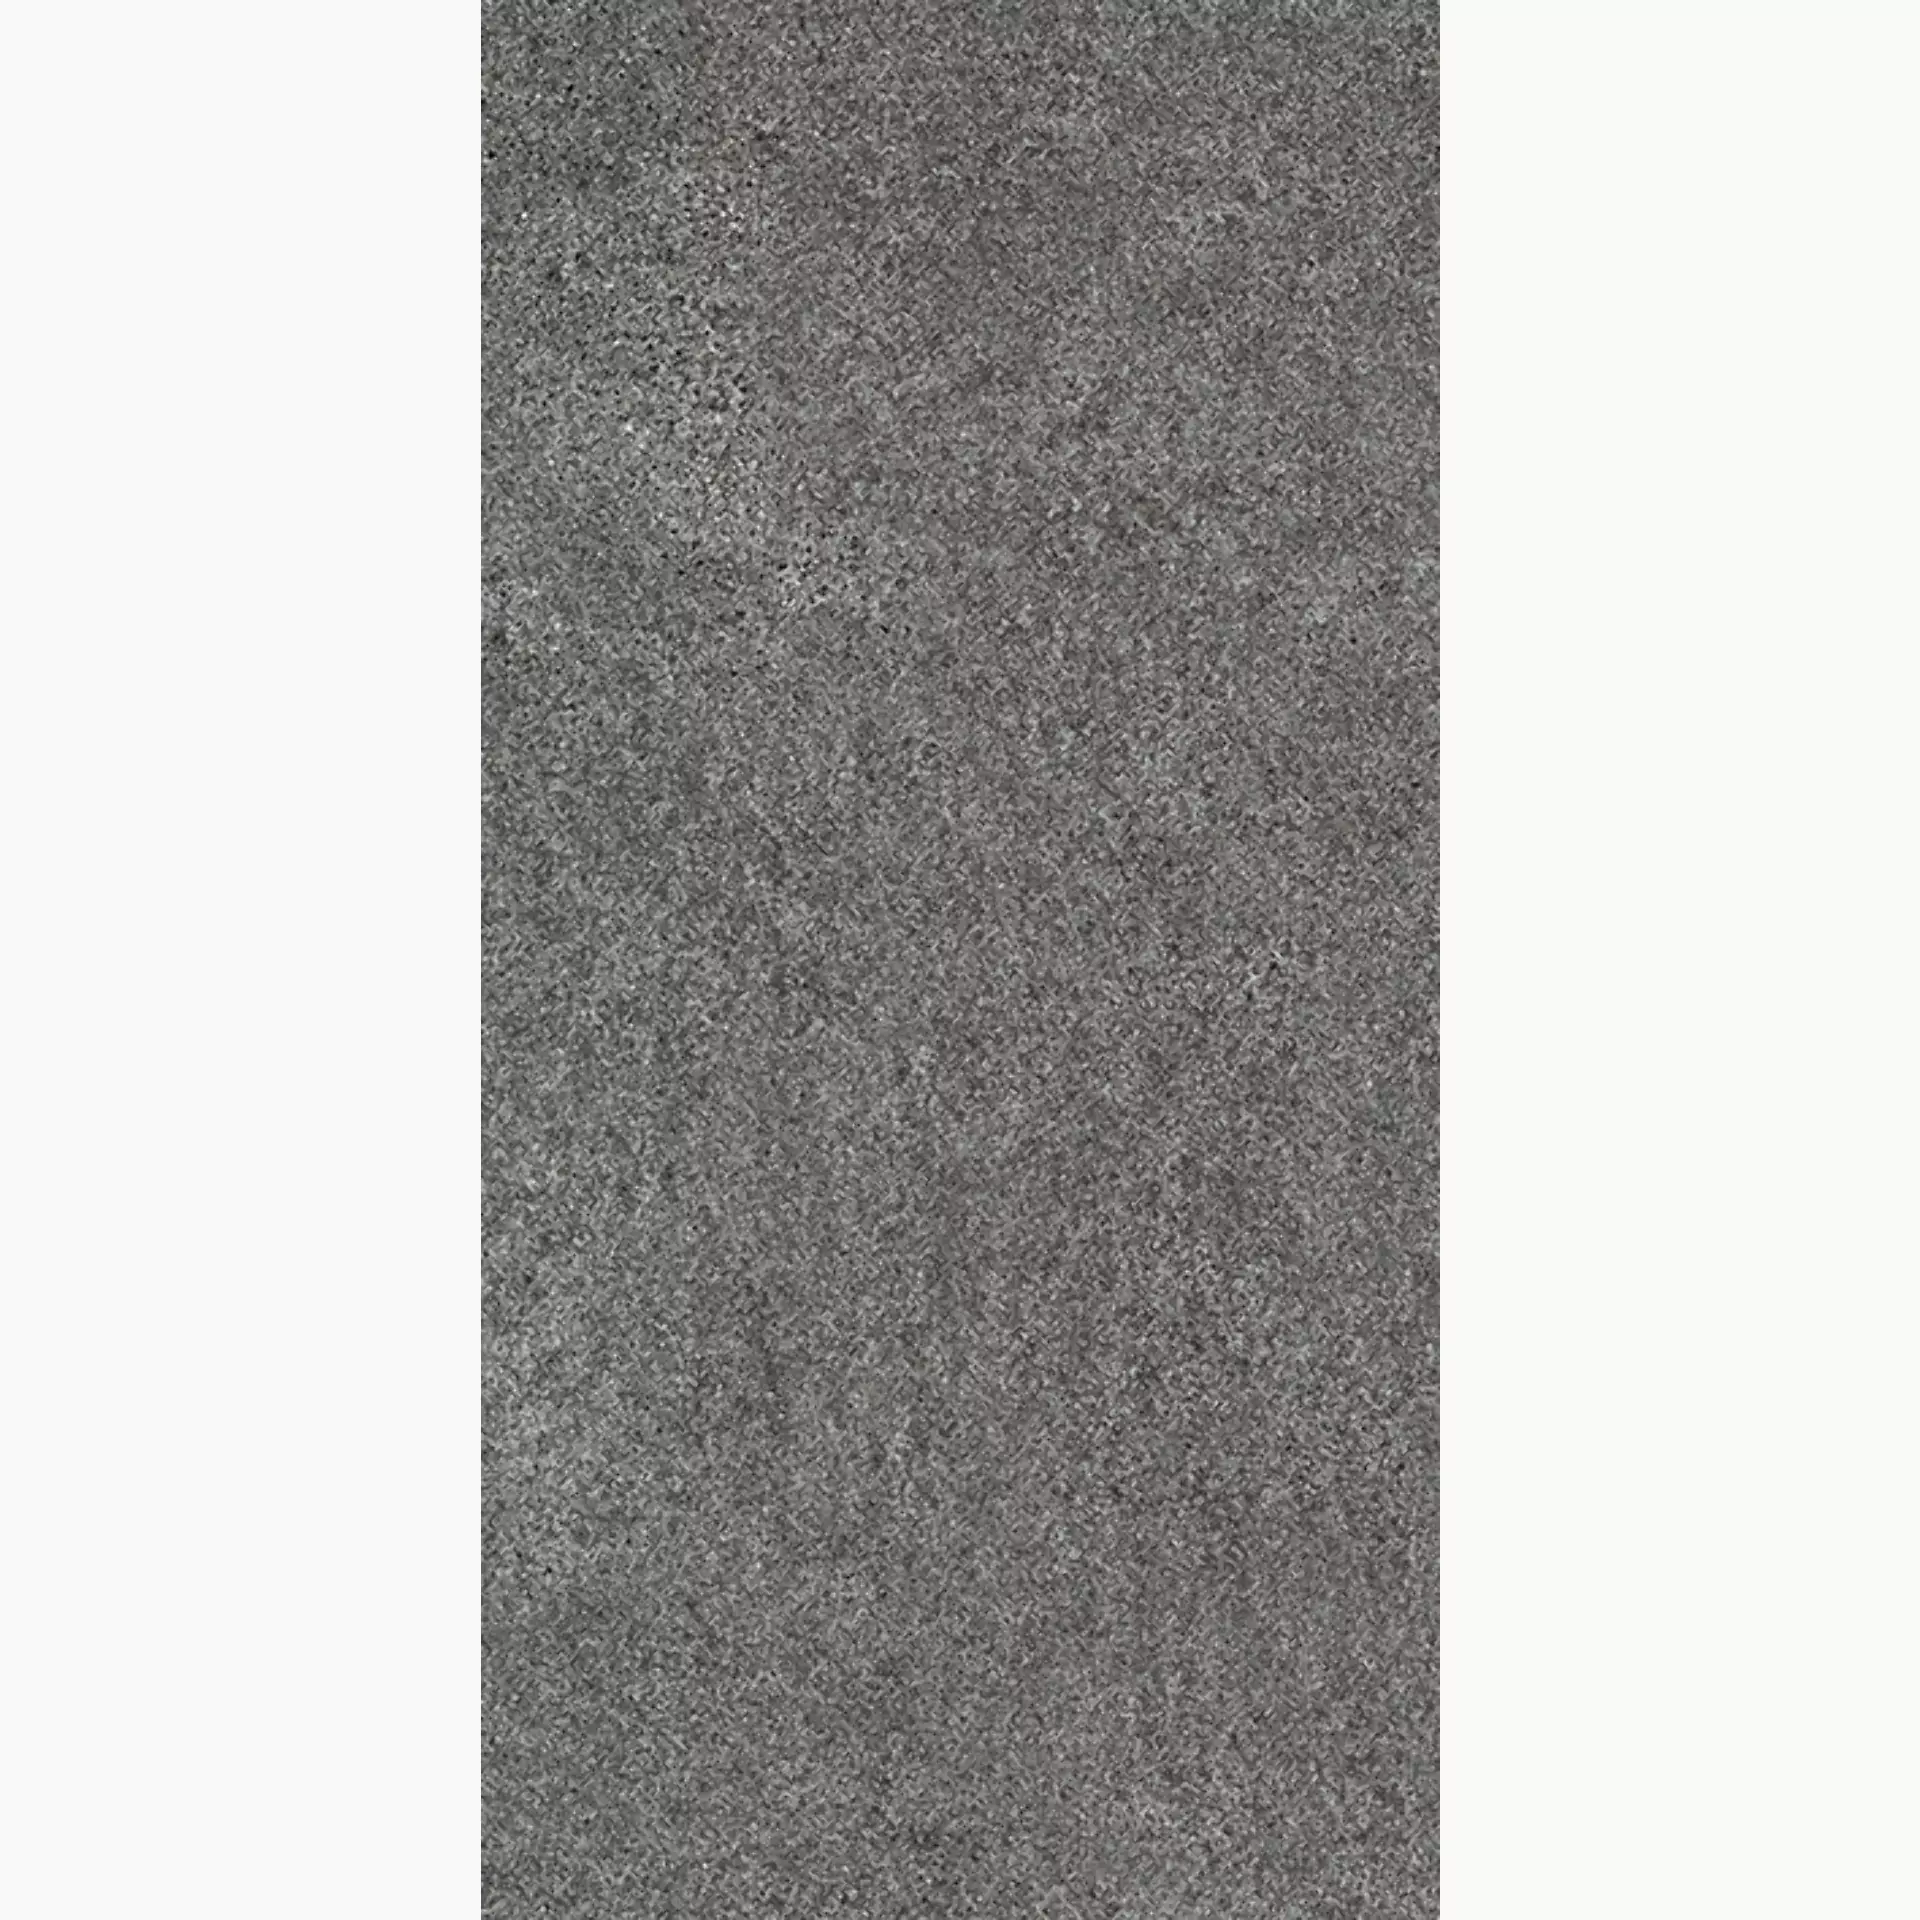 Wandfliese,Bodenfliese Villeroy & Boch Solid Tones Dark Stone Matt Dark Stone 2685-PS62 matt 30x60cm rektifiziert 10mm